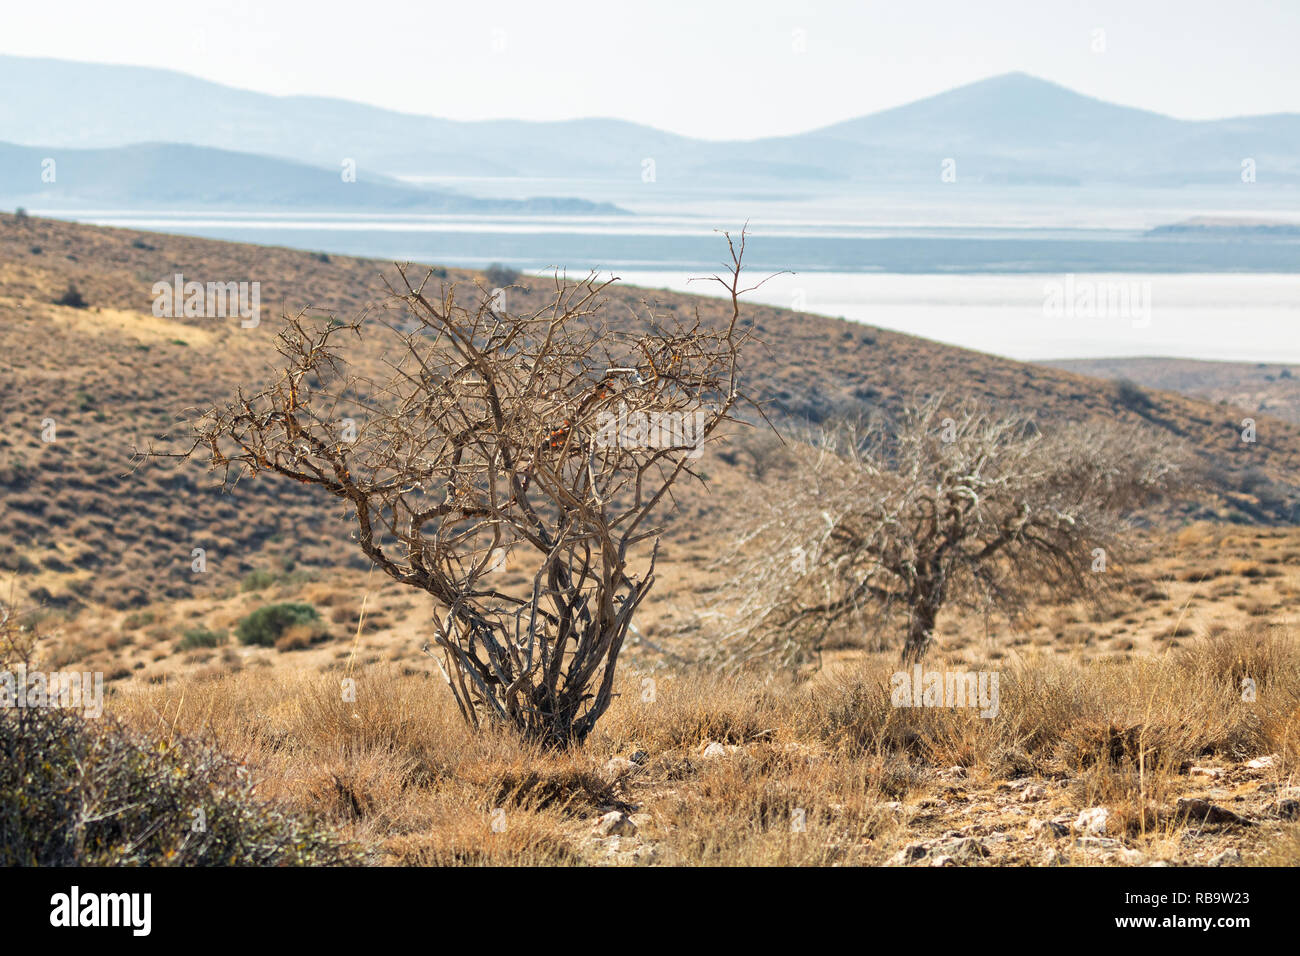 Auf der kaboodan Insel, die größte Insel der Urmia See mit einer Fläche 3500 Hektar Stockfoto